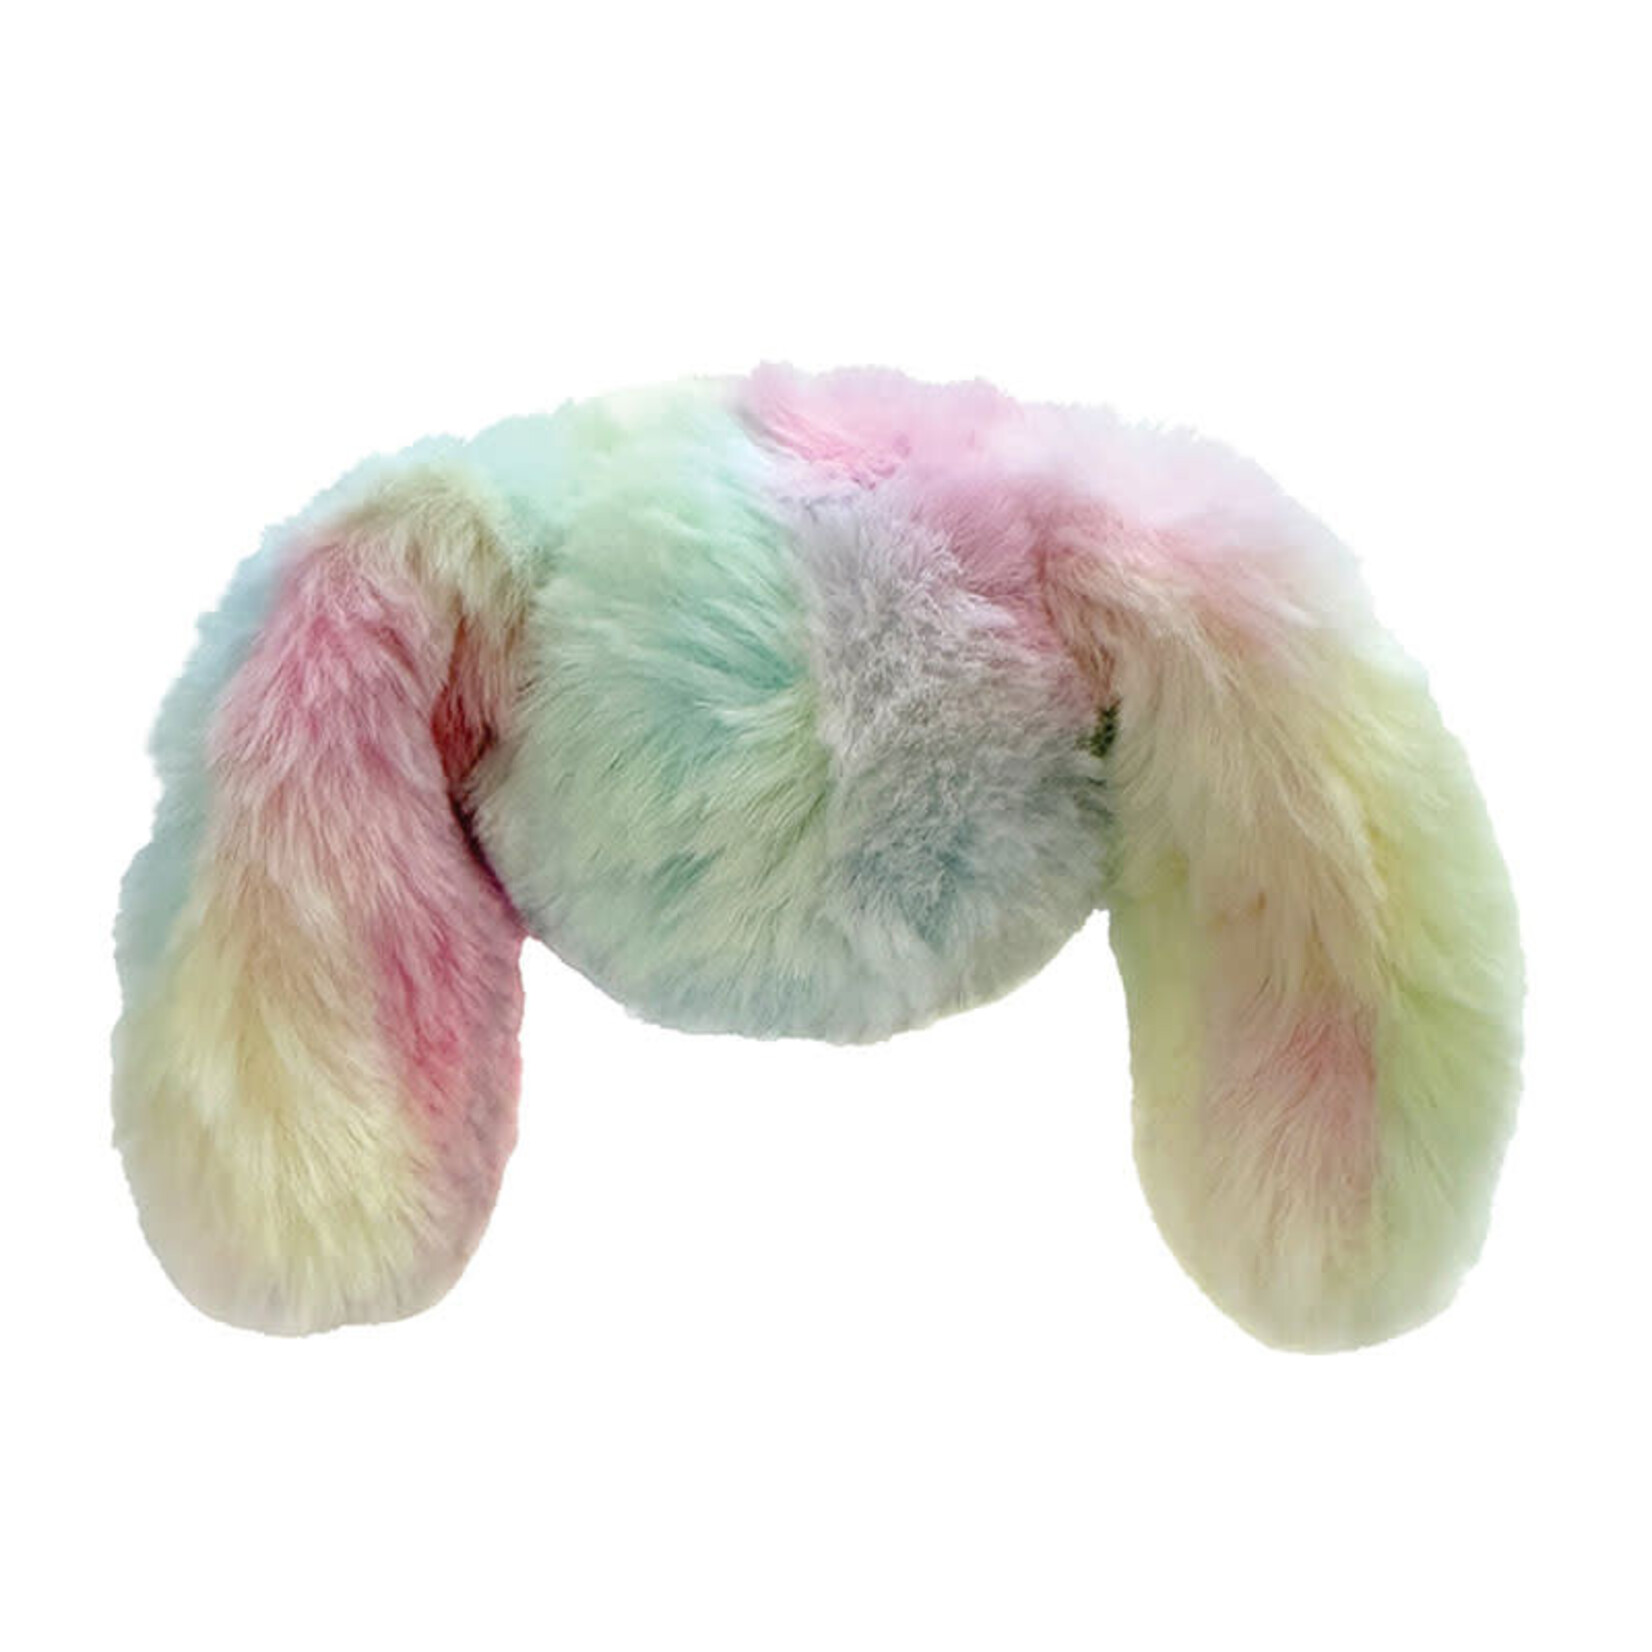 FouFit - Fuzzy Wuzzies - Rainbow Bunny Ball